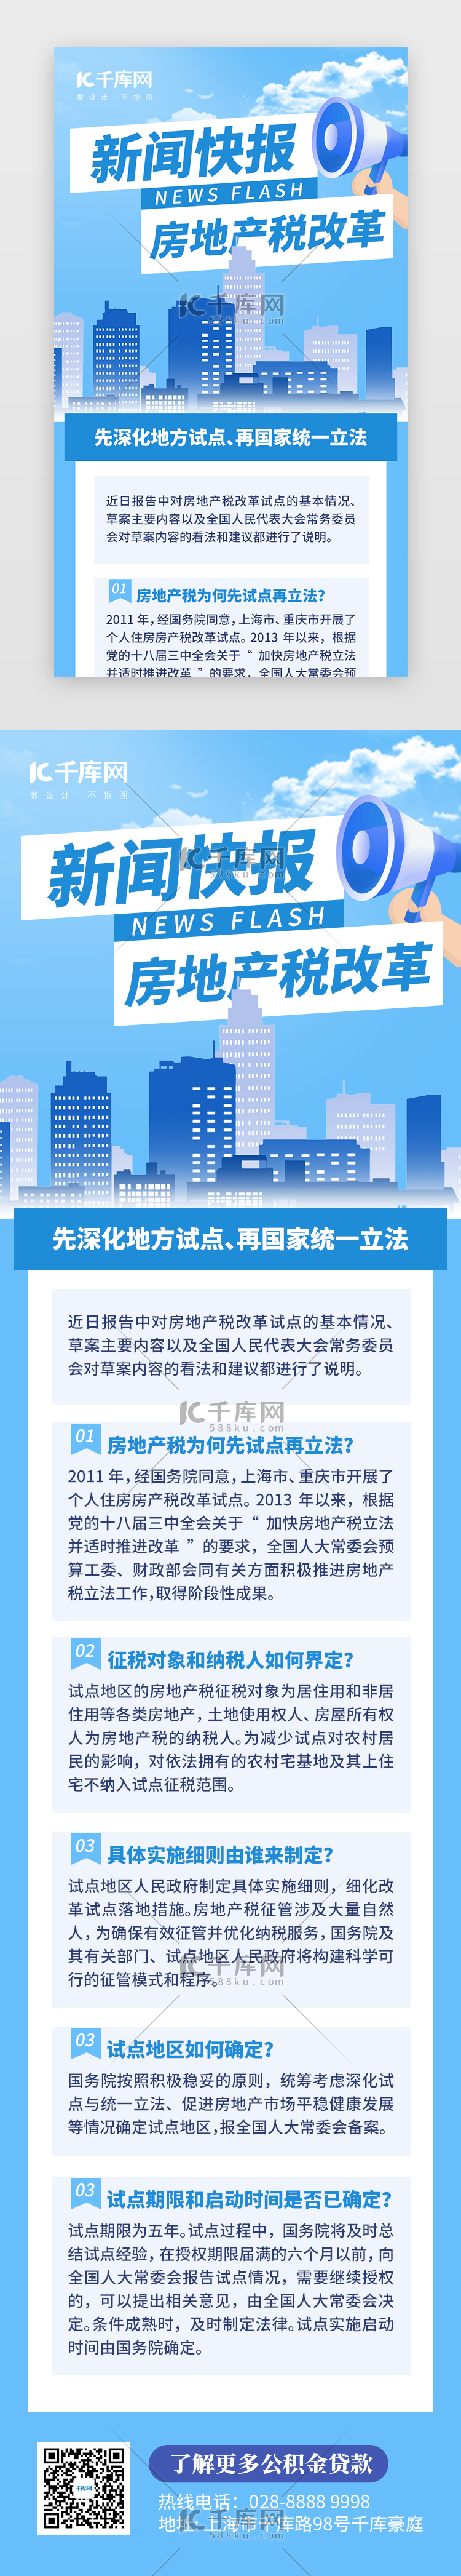 新闻快报房地产税改革H5创意蓝色建筑